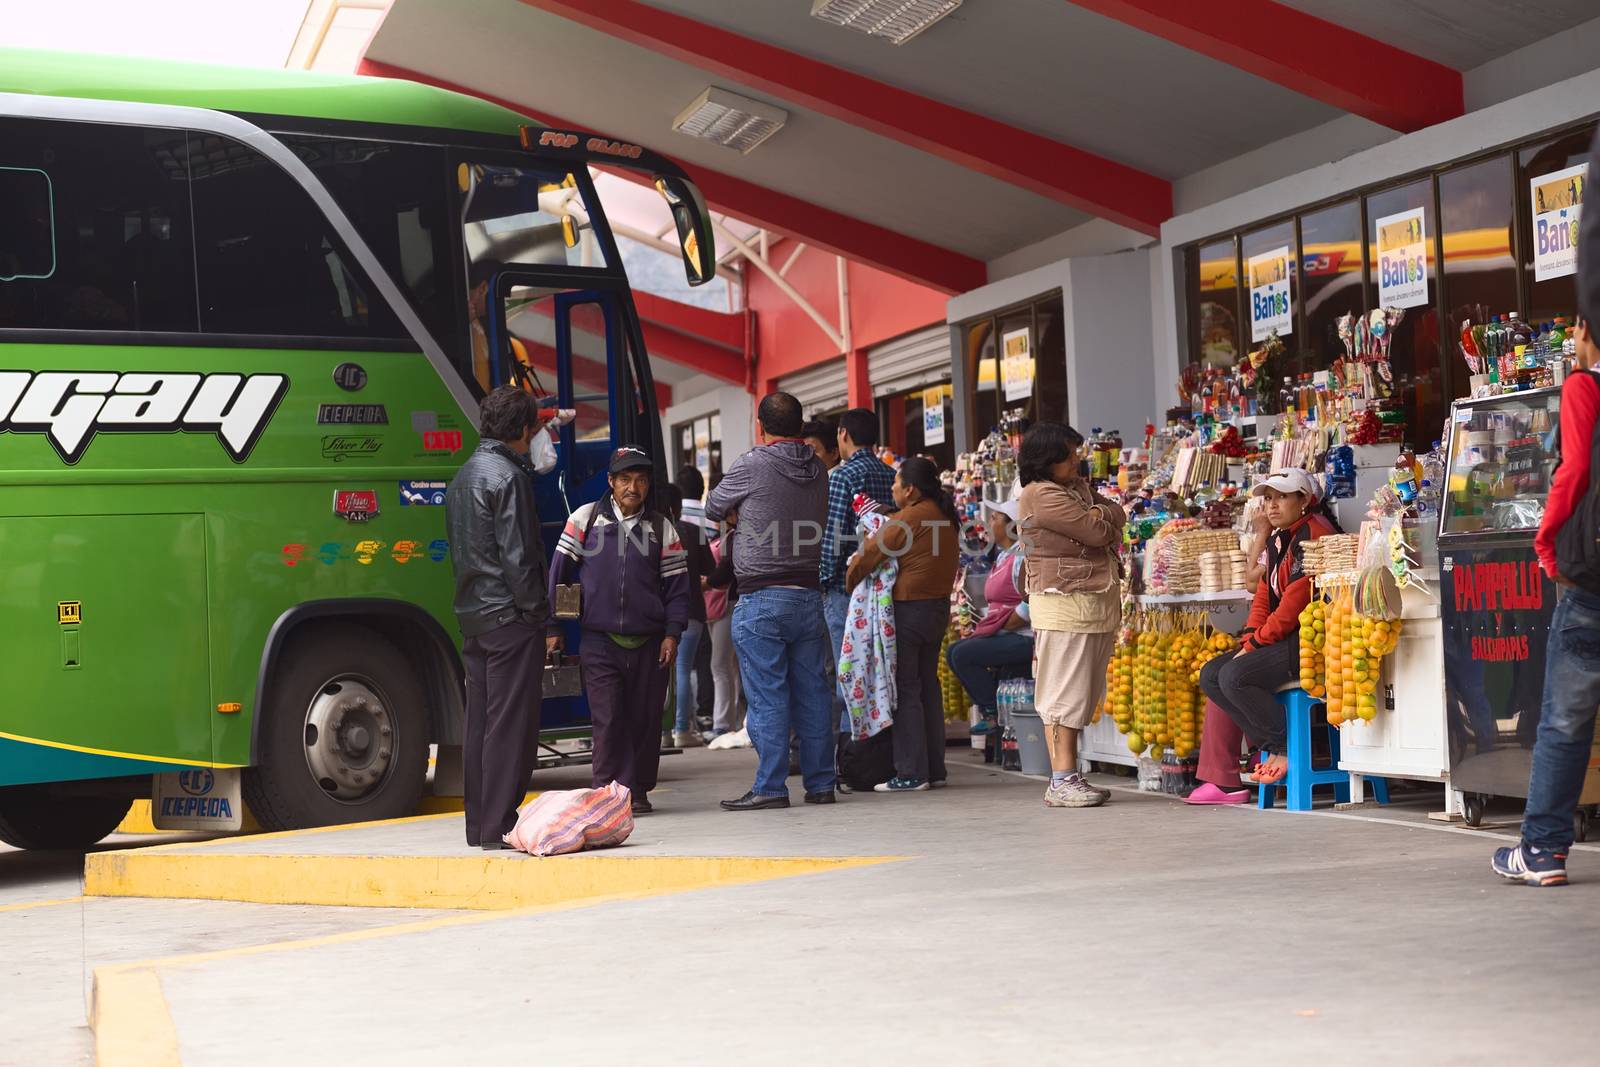 Bus Terminal in Banos, Ecuador by sven